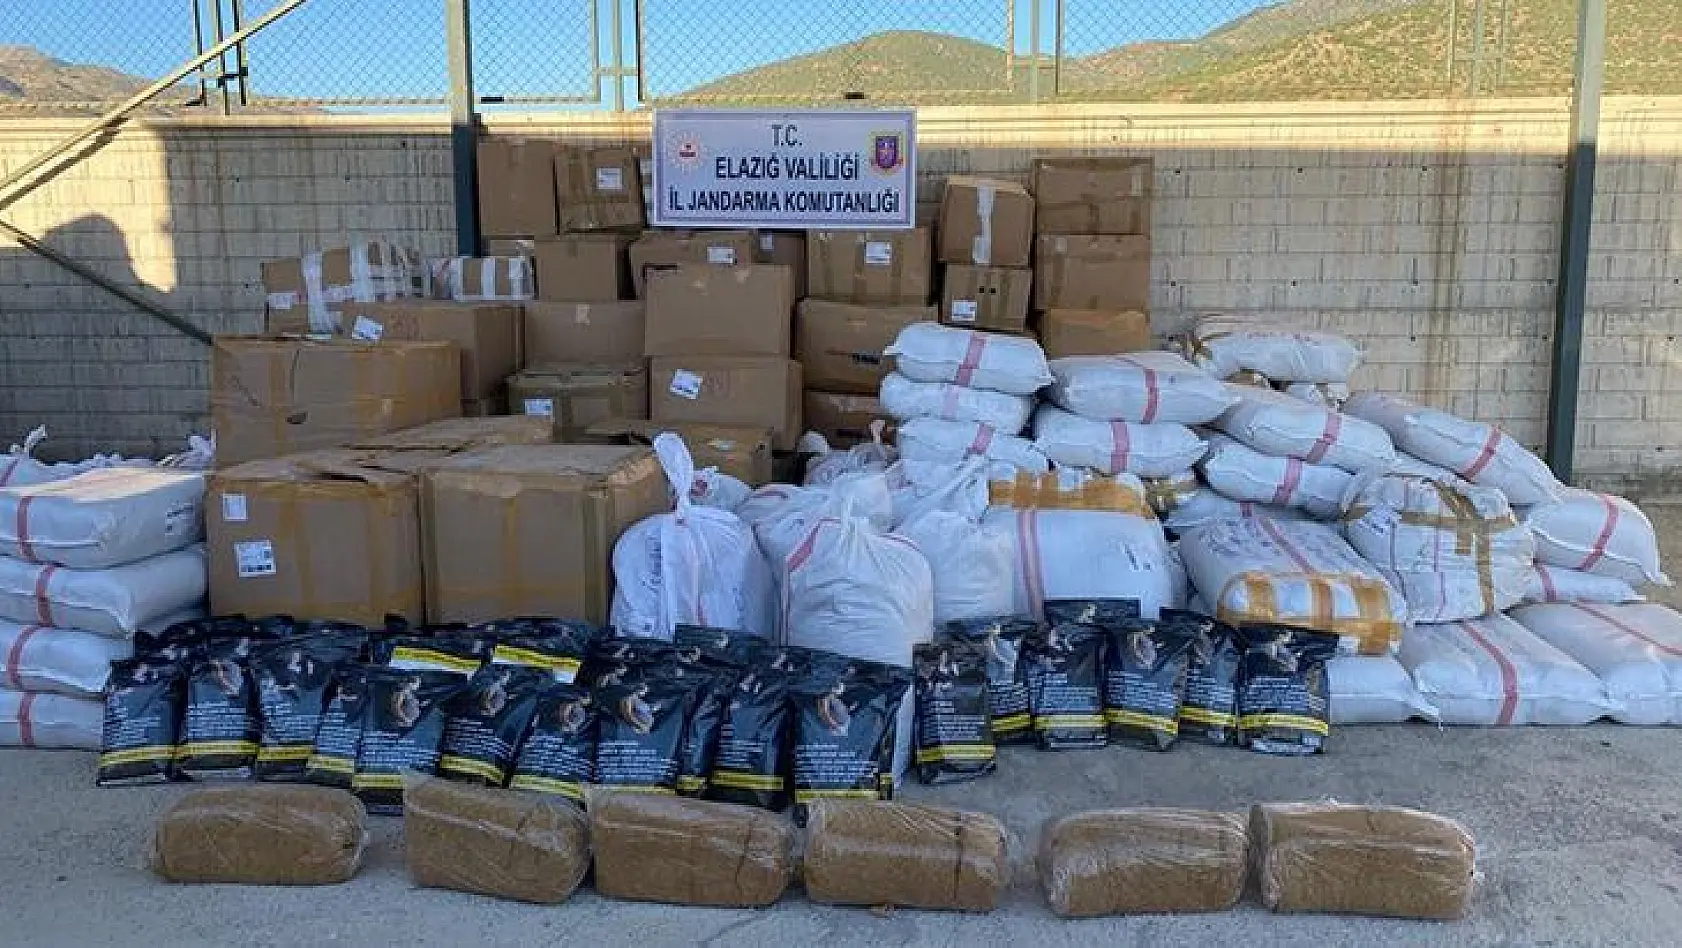 Elazığ'da 3,5 ton kaçak tütün ele geçirildi: 19 gözaltı